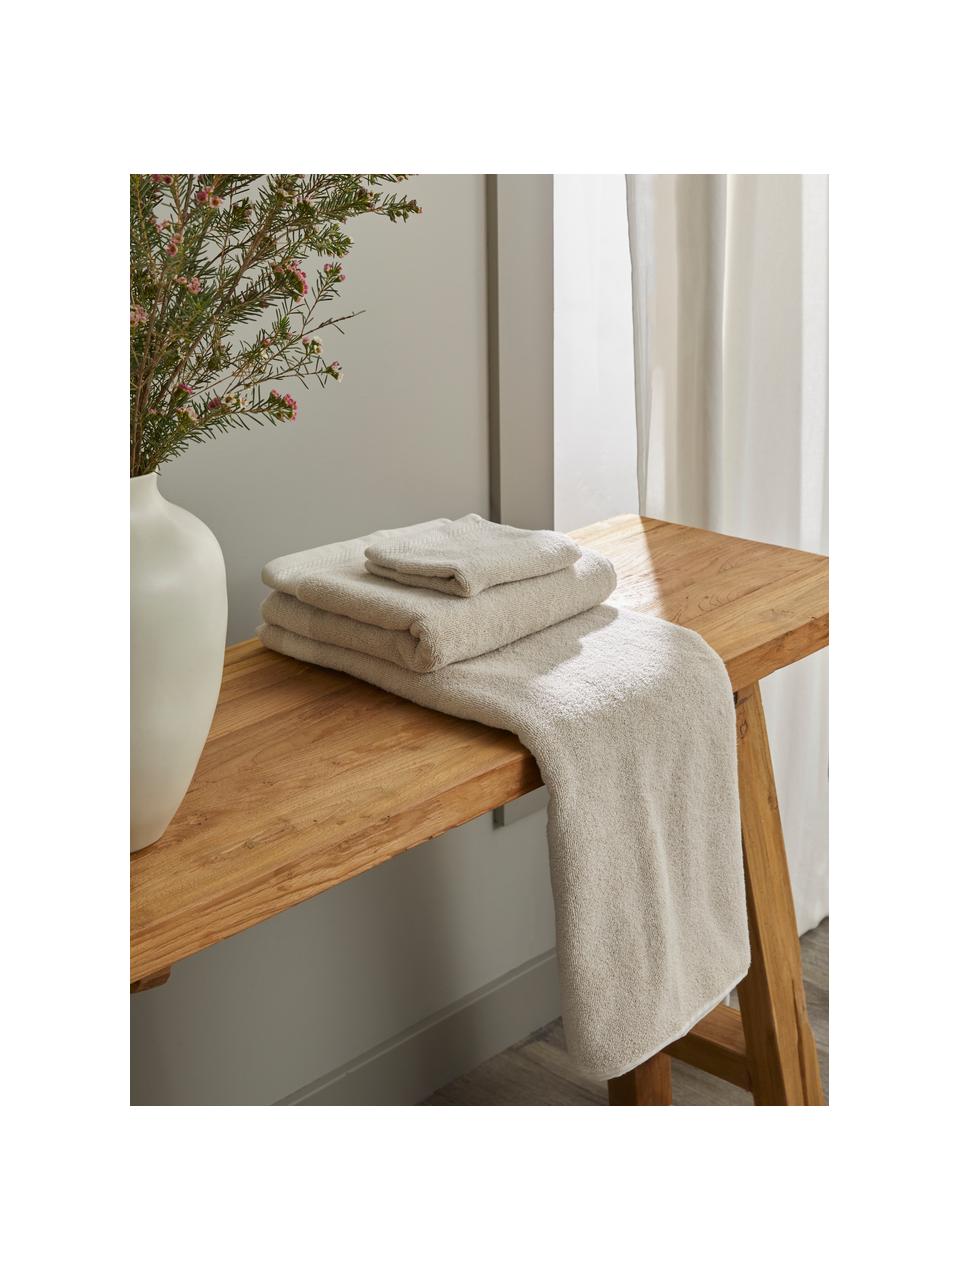 Set de toallas de algodón ecológico Premium, 3 uds., Beige, Set de diferentes tamaños